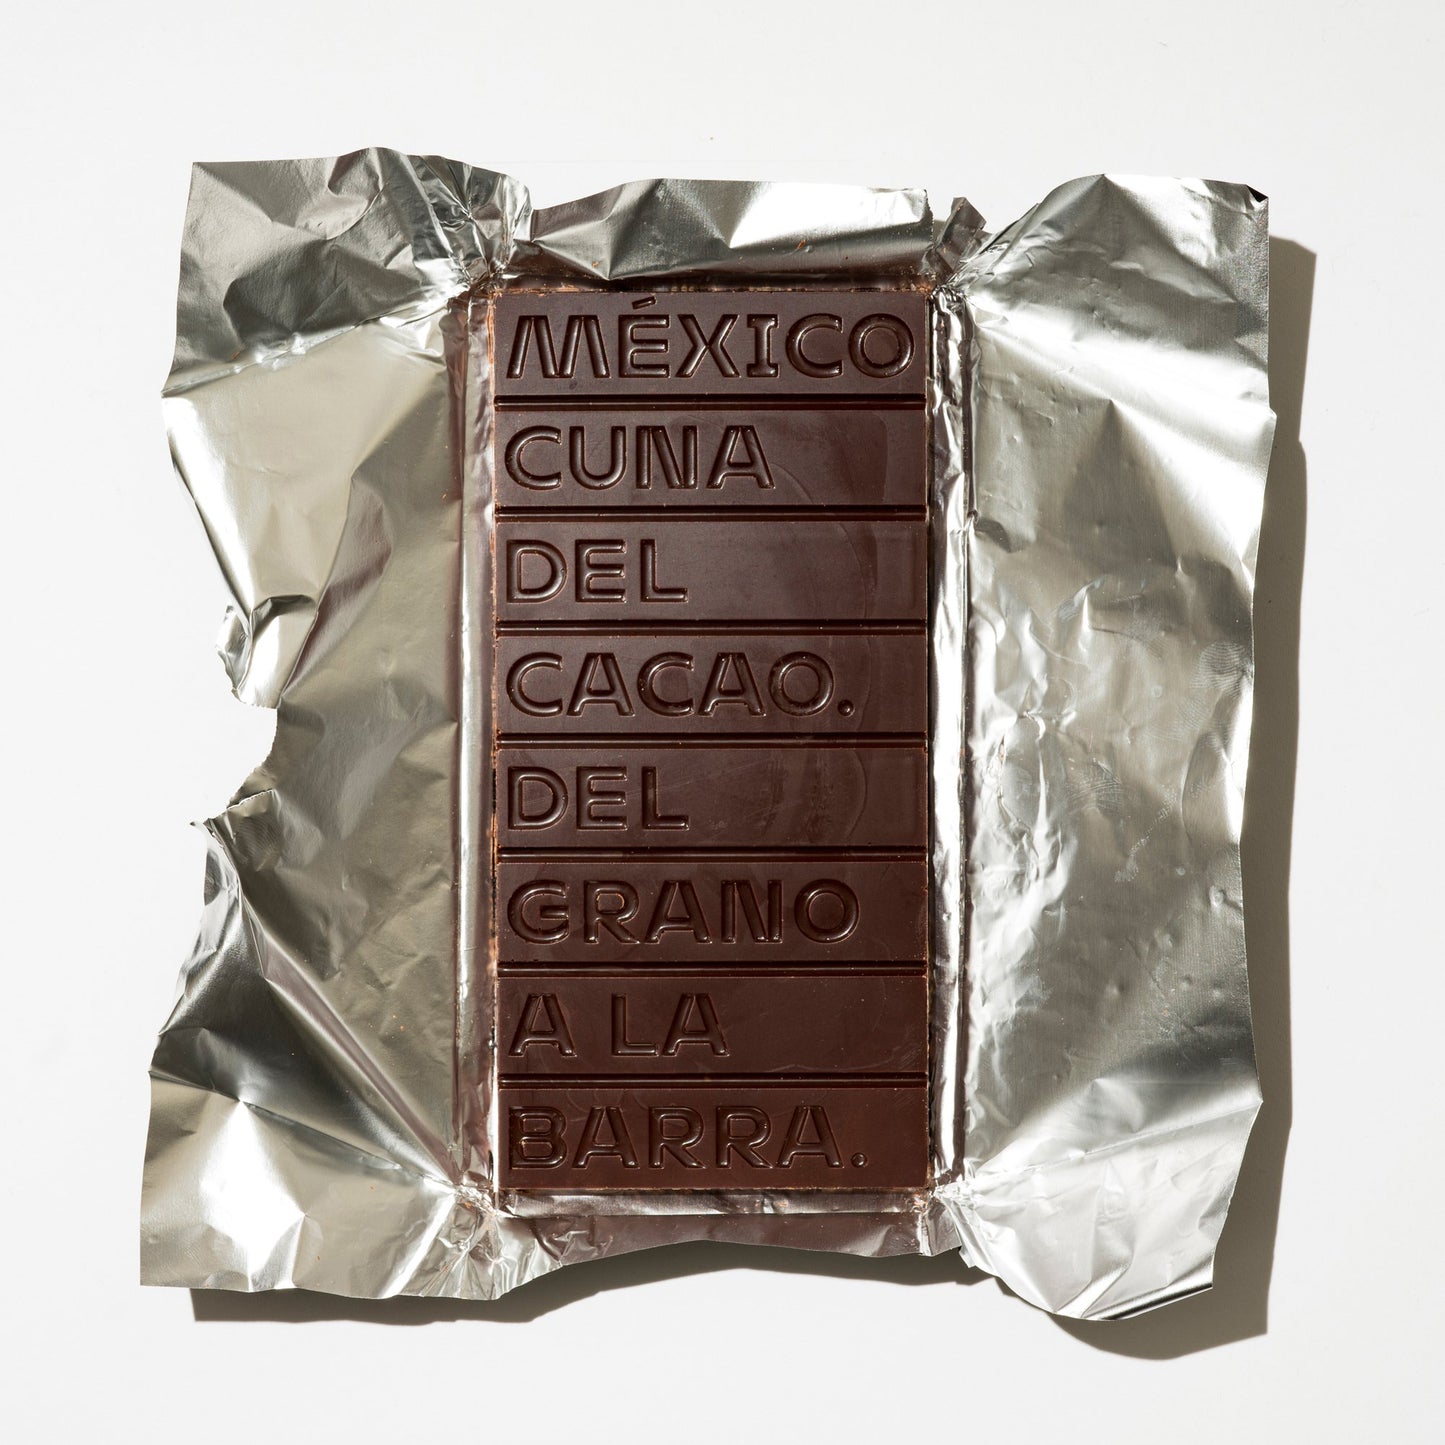 Cuna de Piedra 73% Mexican Dark Chocolate with Mezcal Joven | Mexican Heirloom Cacao